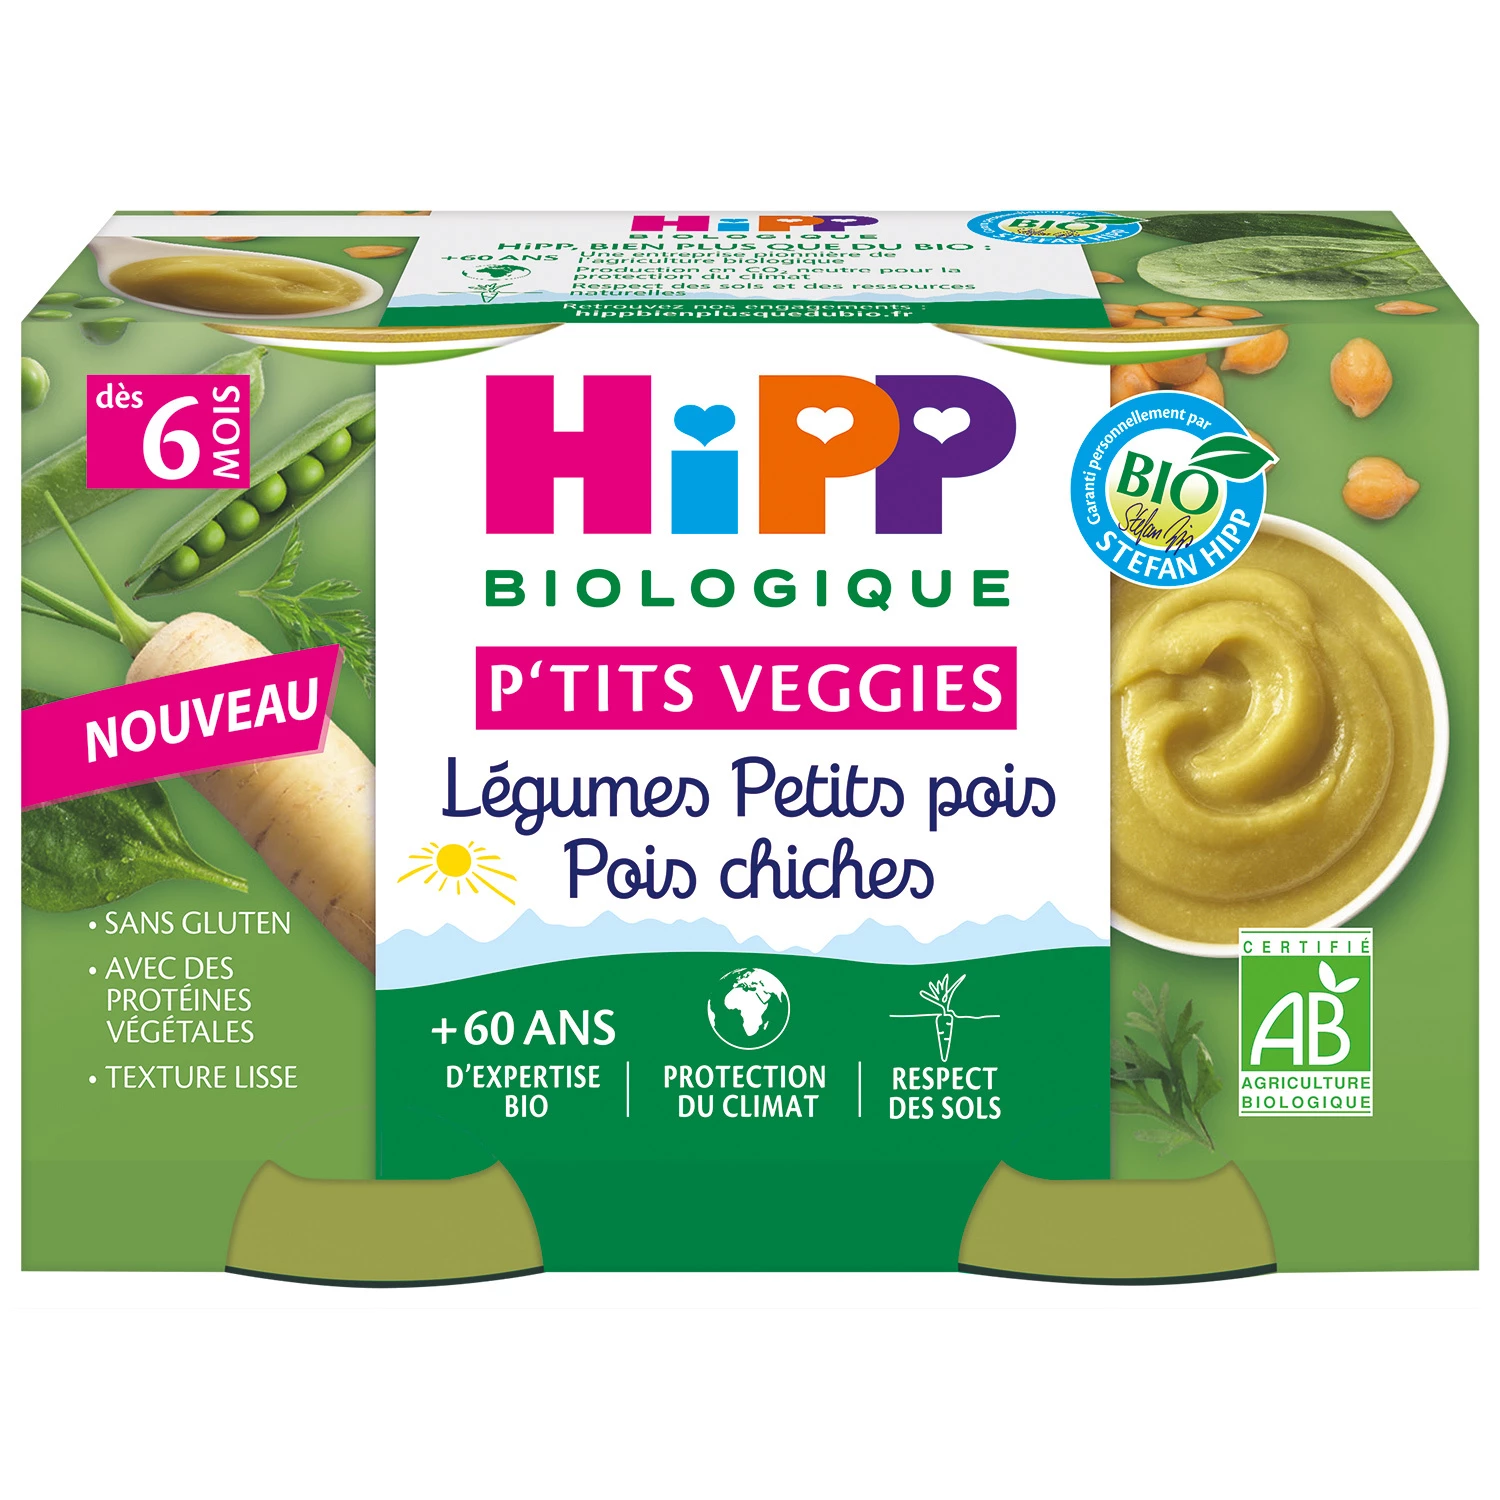 Petits pots p'tits veggies légumes petits pois pois chiches Bio dès 6 mois, 2x125g, HIPP BioLOGIQUE